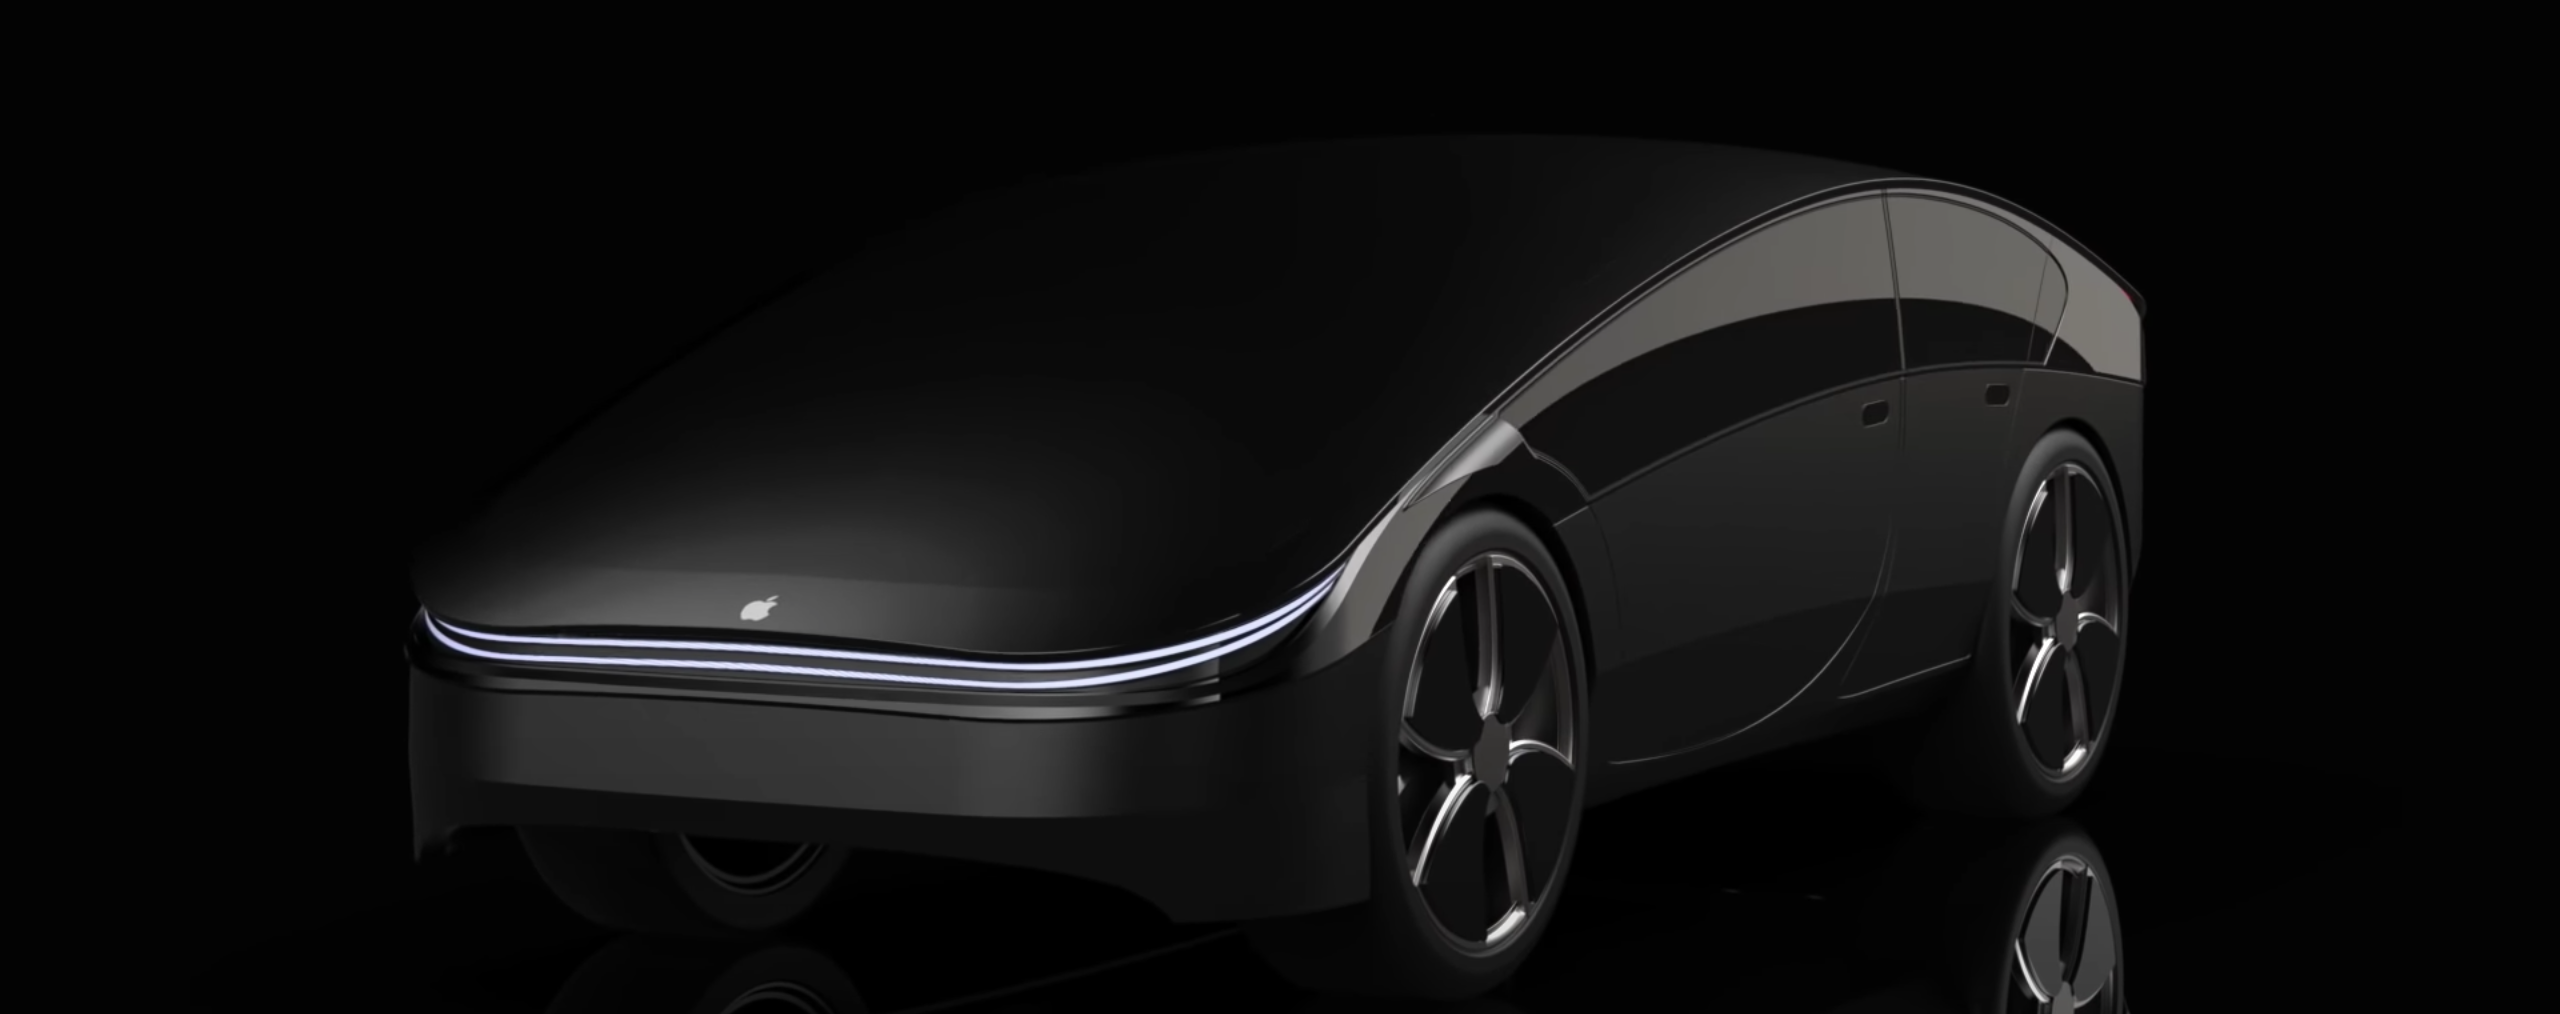 إشاعات 19 نوفمبر 2021 0comments
Apple يريد الحصول على سيارات كهربائية ذاتية القيادة في السوق اعتبارًا من عام 2025